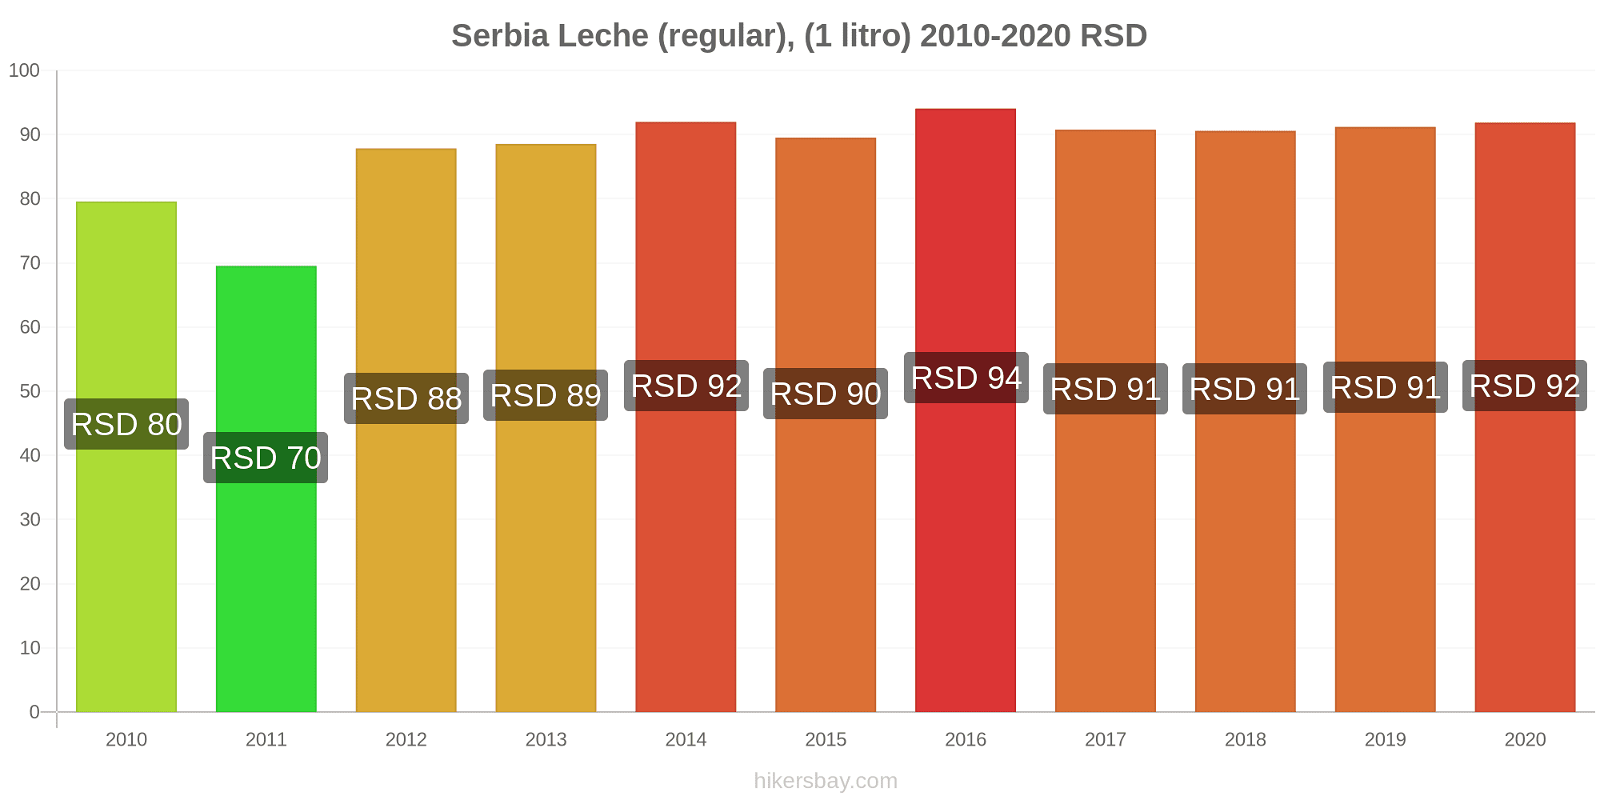 Serbia cambios de precios Leche (Regular), (1 litro) hikersbay.com